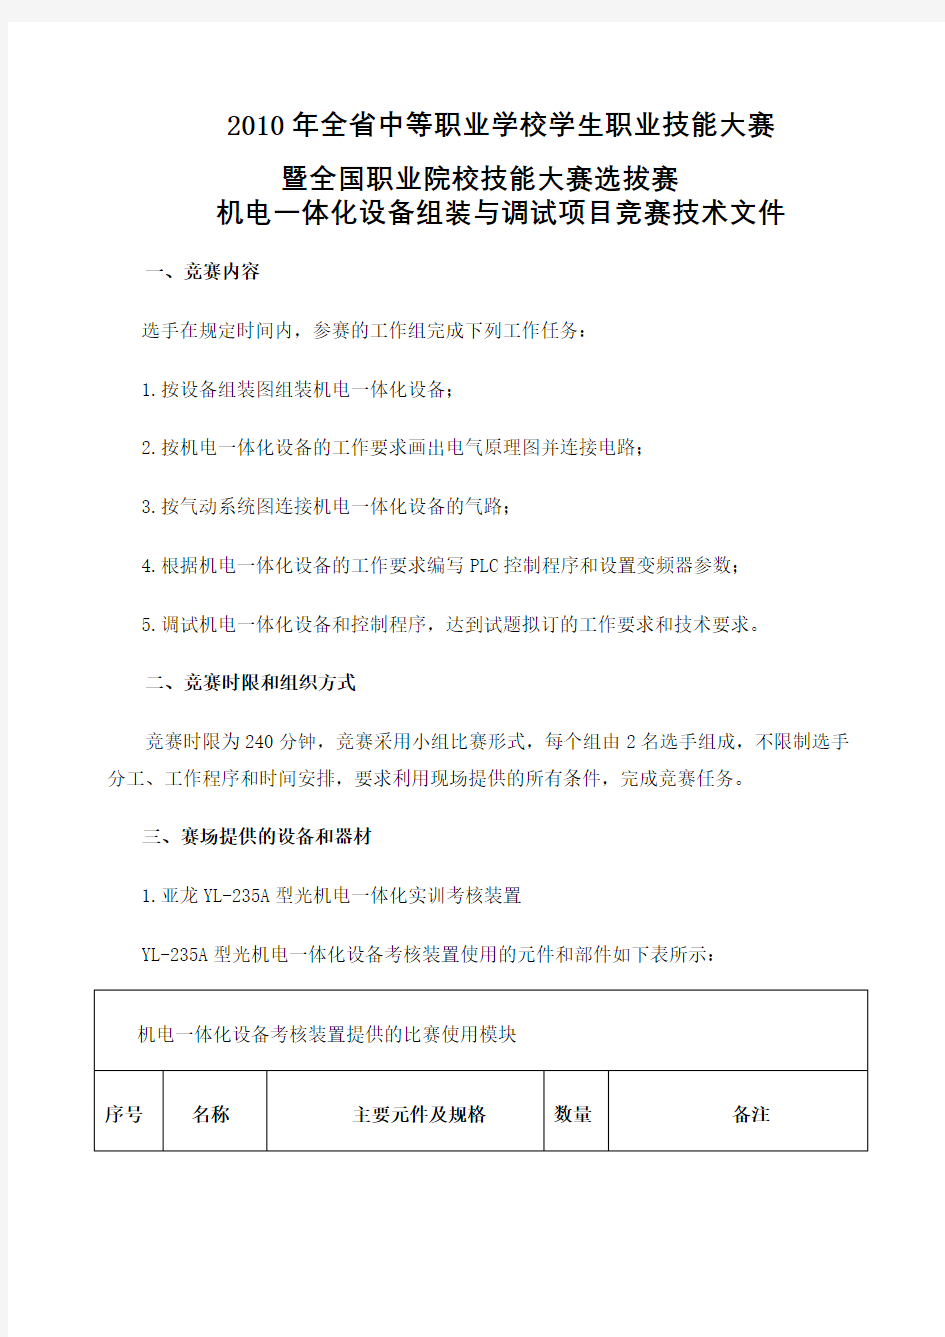 机电一体化设备组装与调试项目竞赛技术文件杭州市中等职业学校